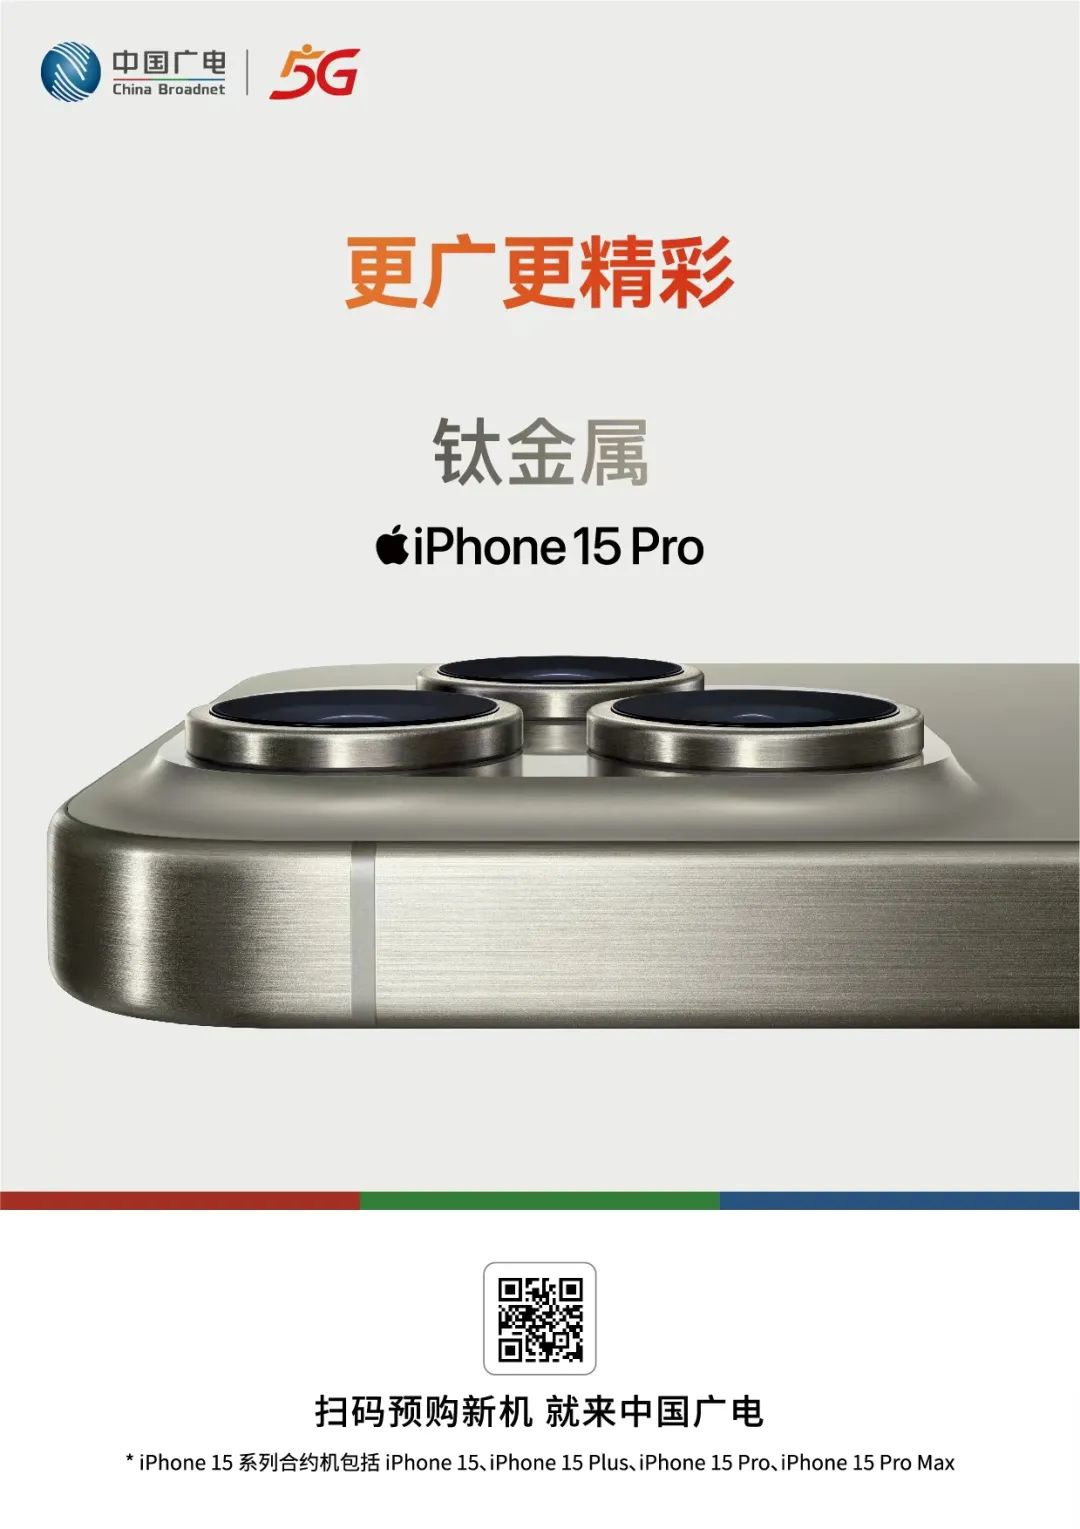 中国广电 iPhone 15 / Pro 系列合约机预约开启